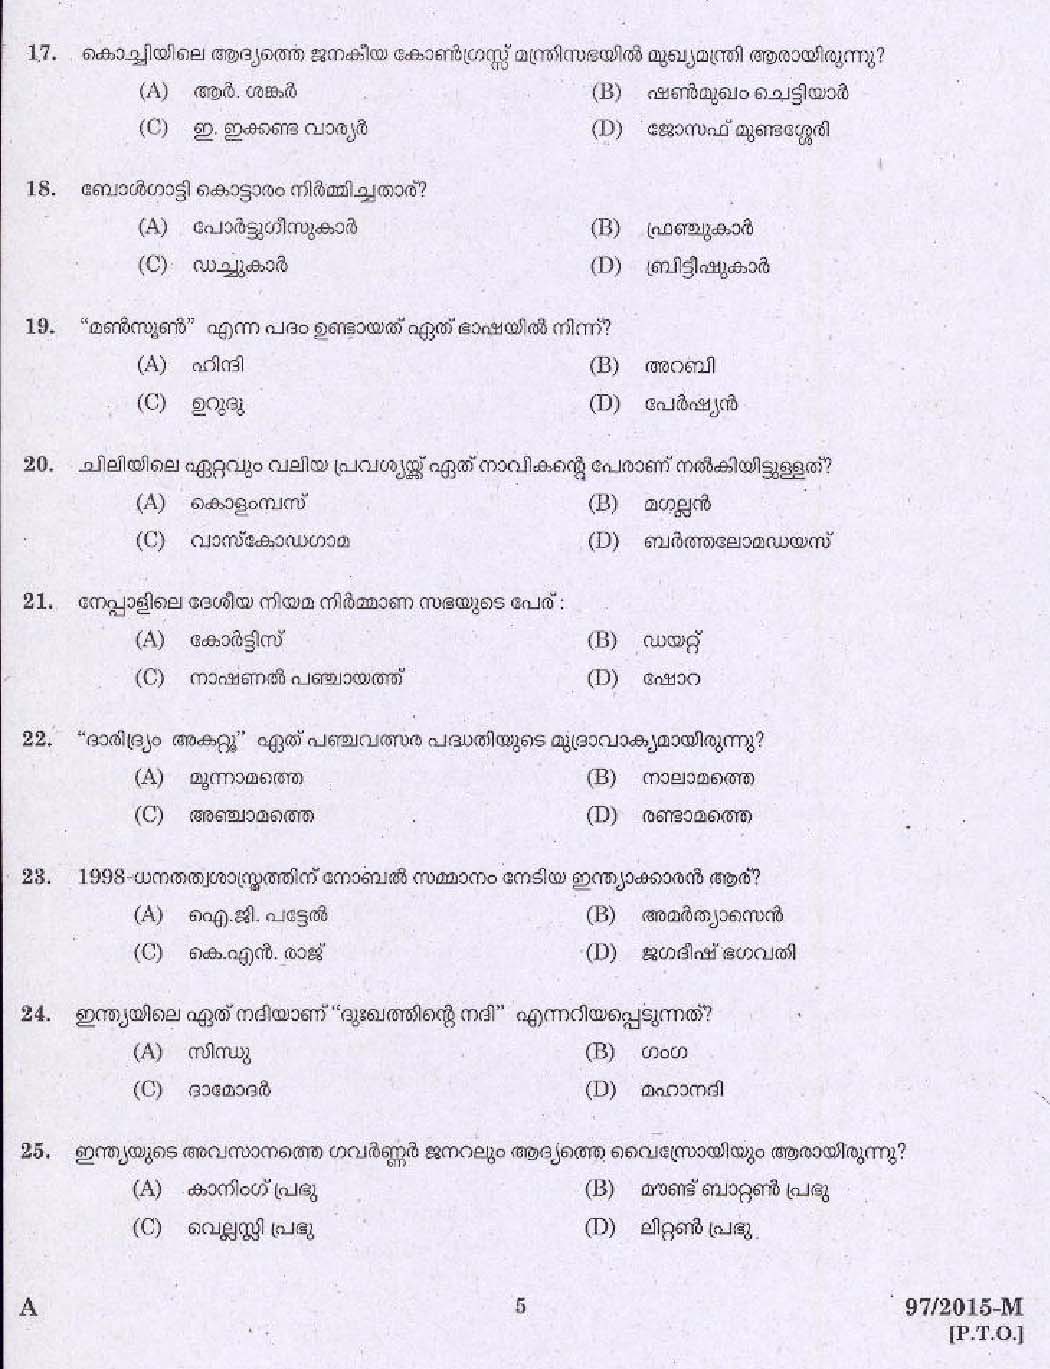 Kerala PSC Driver Grade II Exam 2015 Question Paper Code 972015 M 3